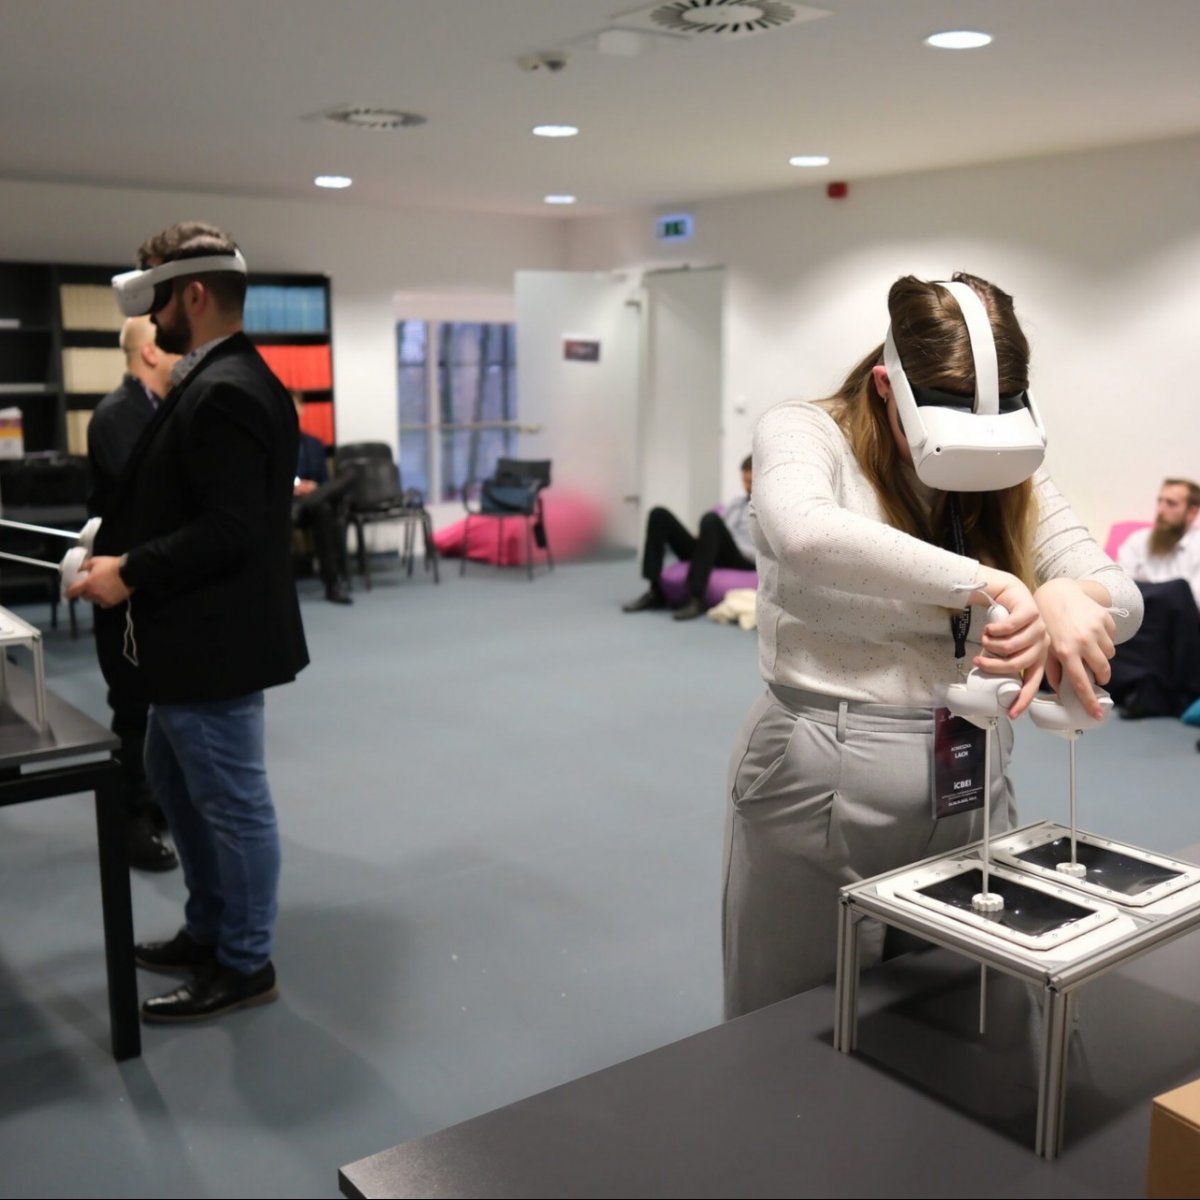 A VR és az AR technológia kiterjesztett valósága – Dimenzióváltás az oktatásban